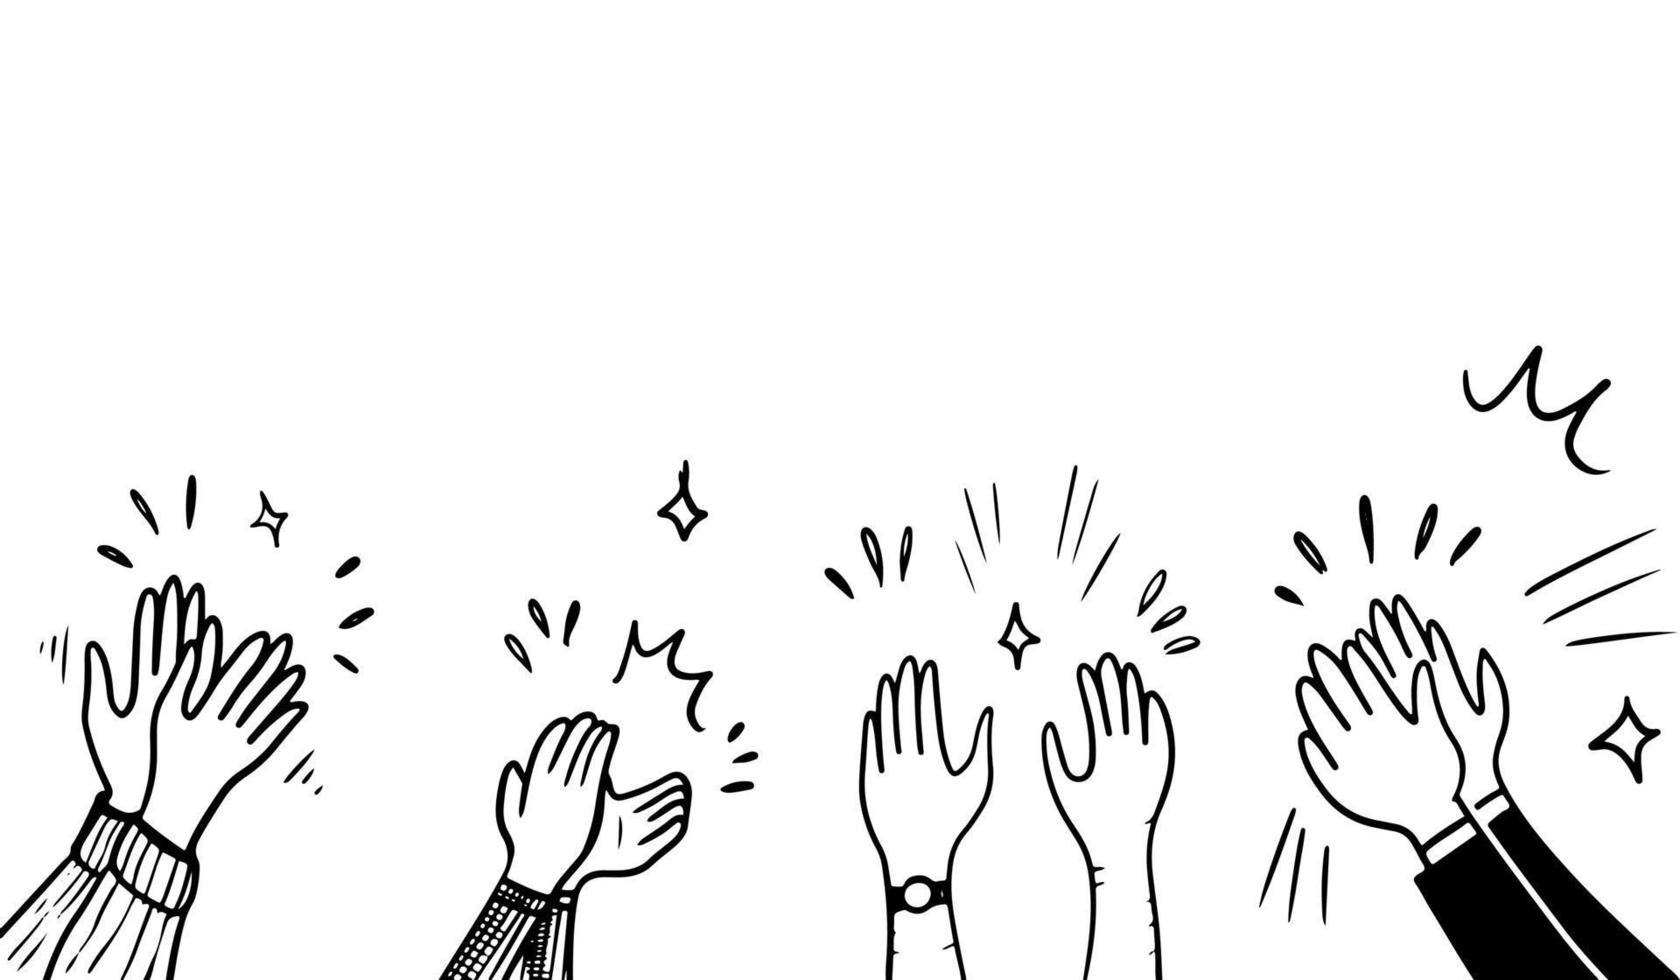 estilo de boceto dibujado a mano de aplausos, gesto de pulgar hacia arriba. manos humanas aplaudiendo ovación. en estilo garabato, ilustración vectorial. vector